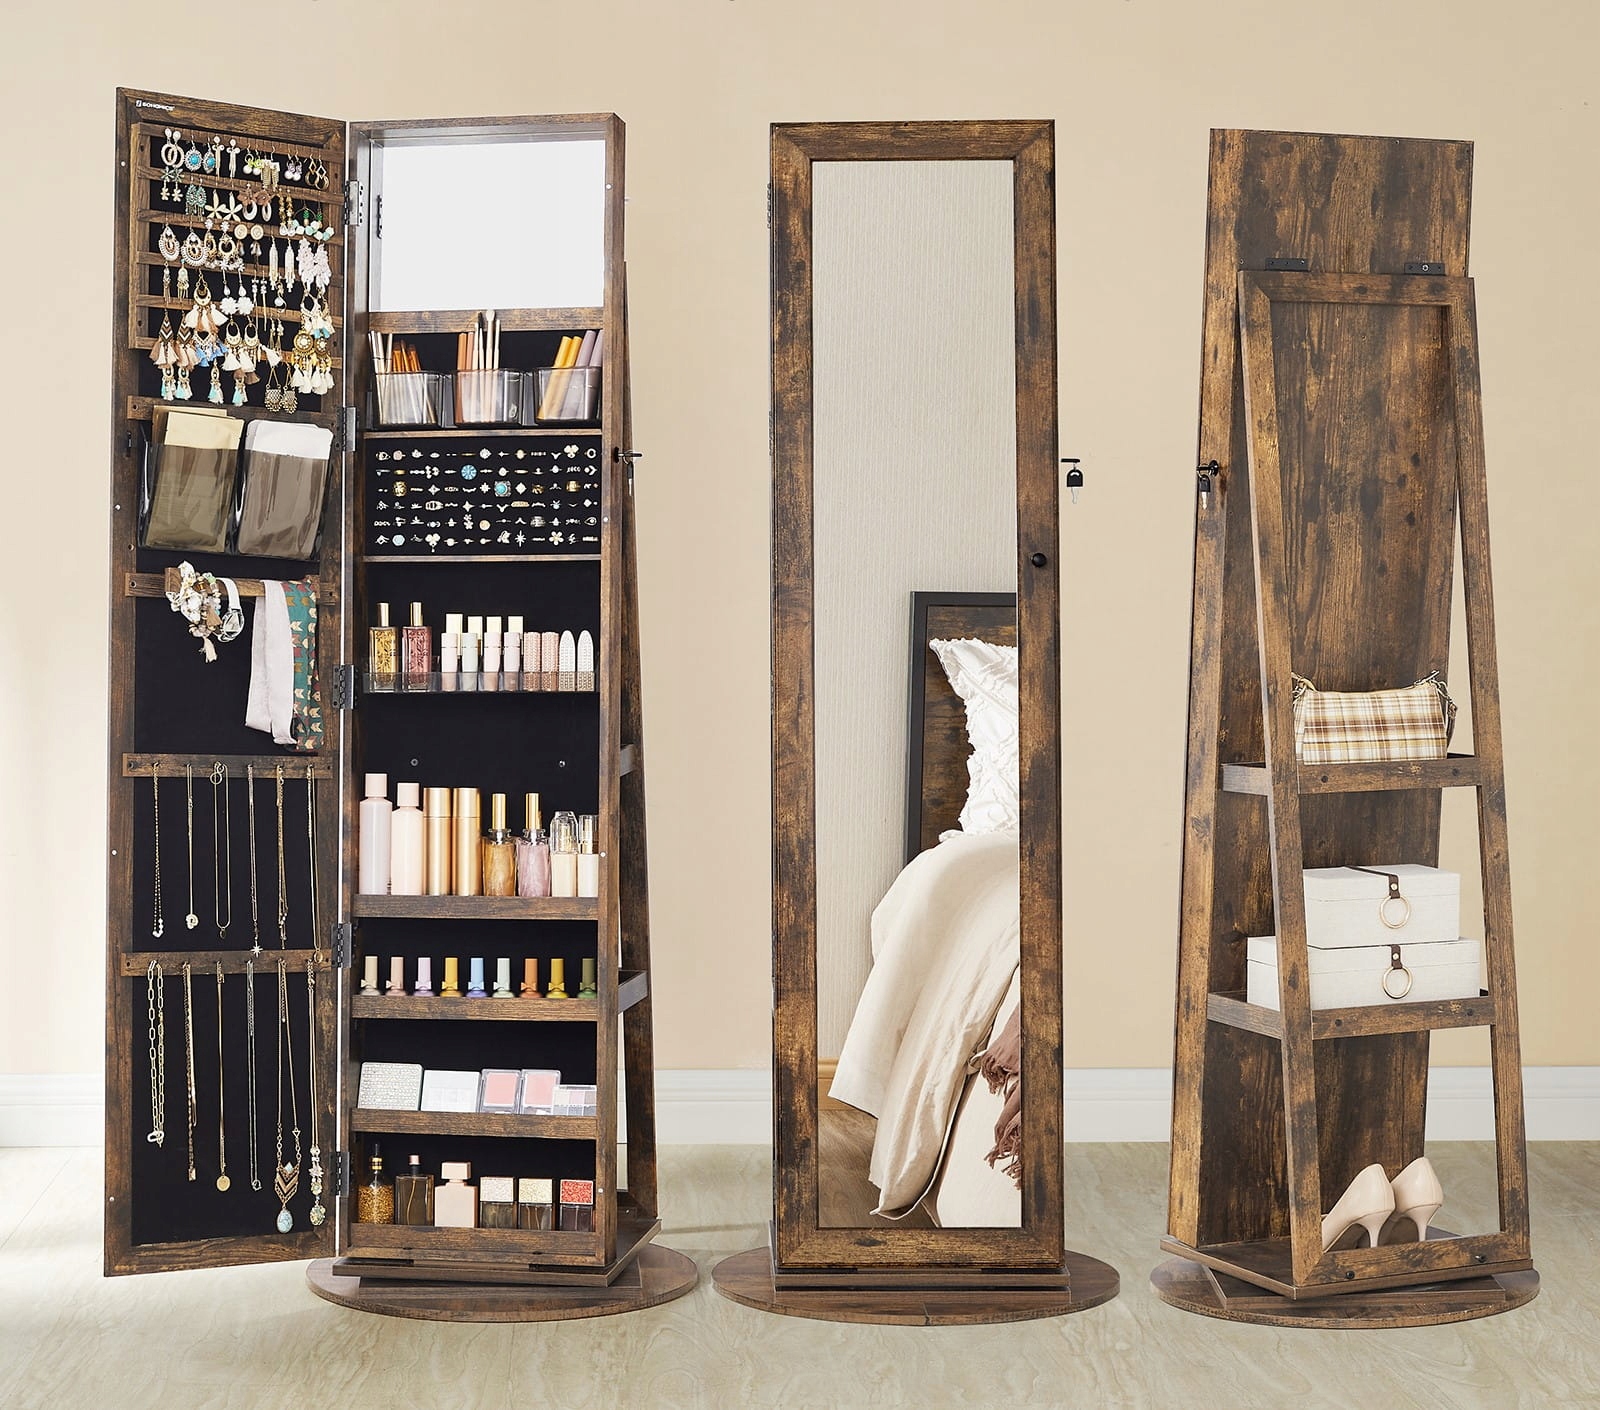 вращающийся ювелирный шкаф зеркало деревенская мебель цвета оттенки коричневого